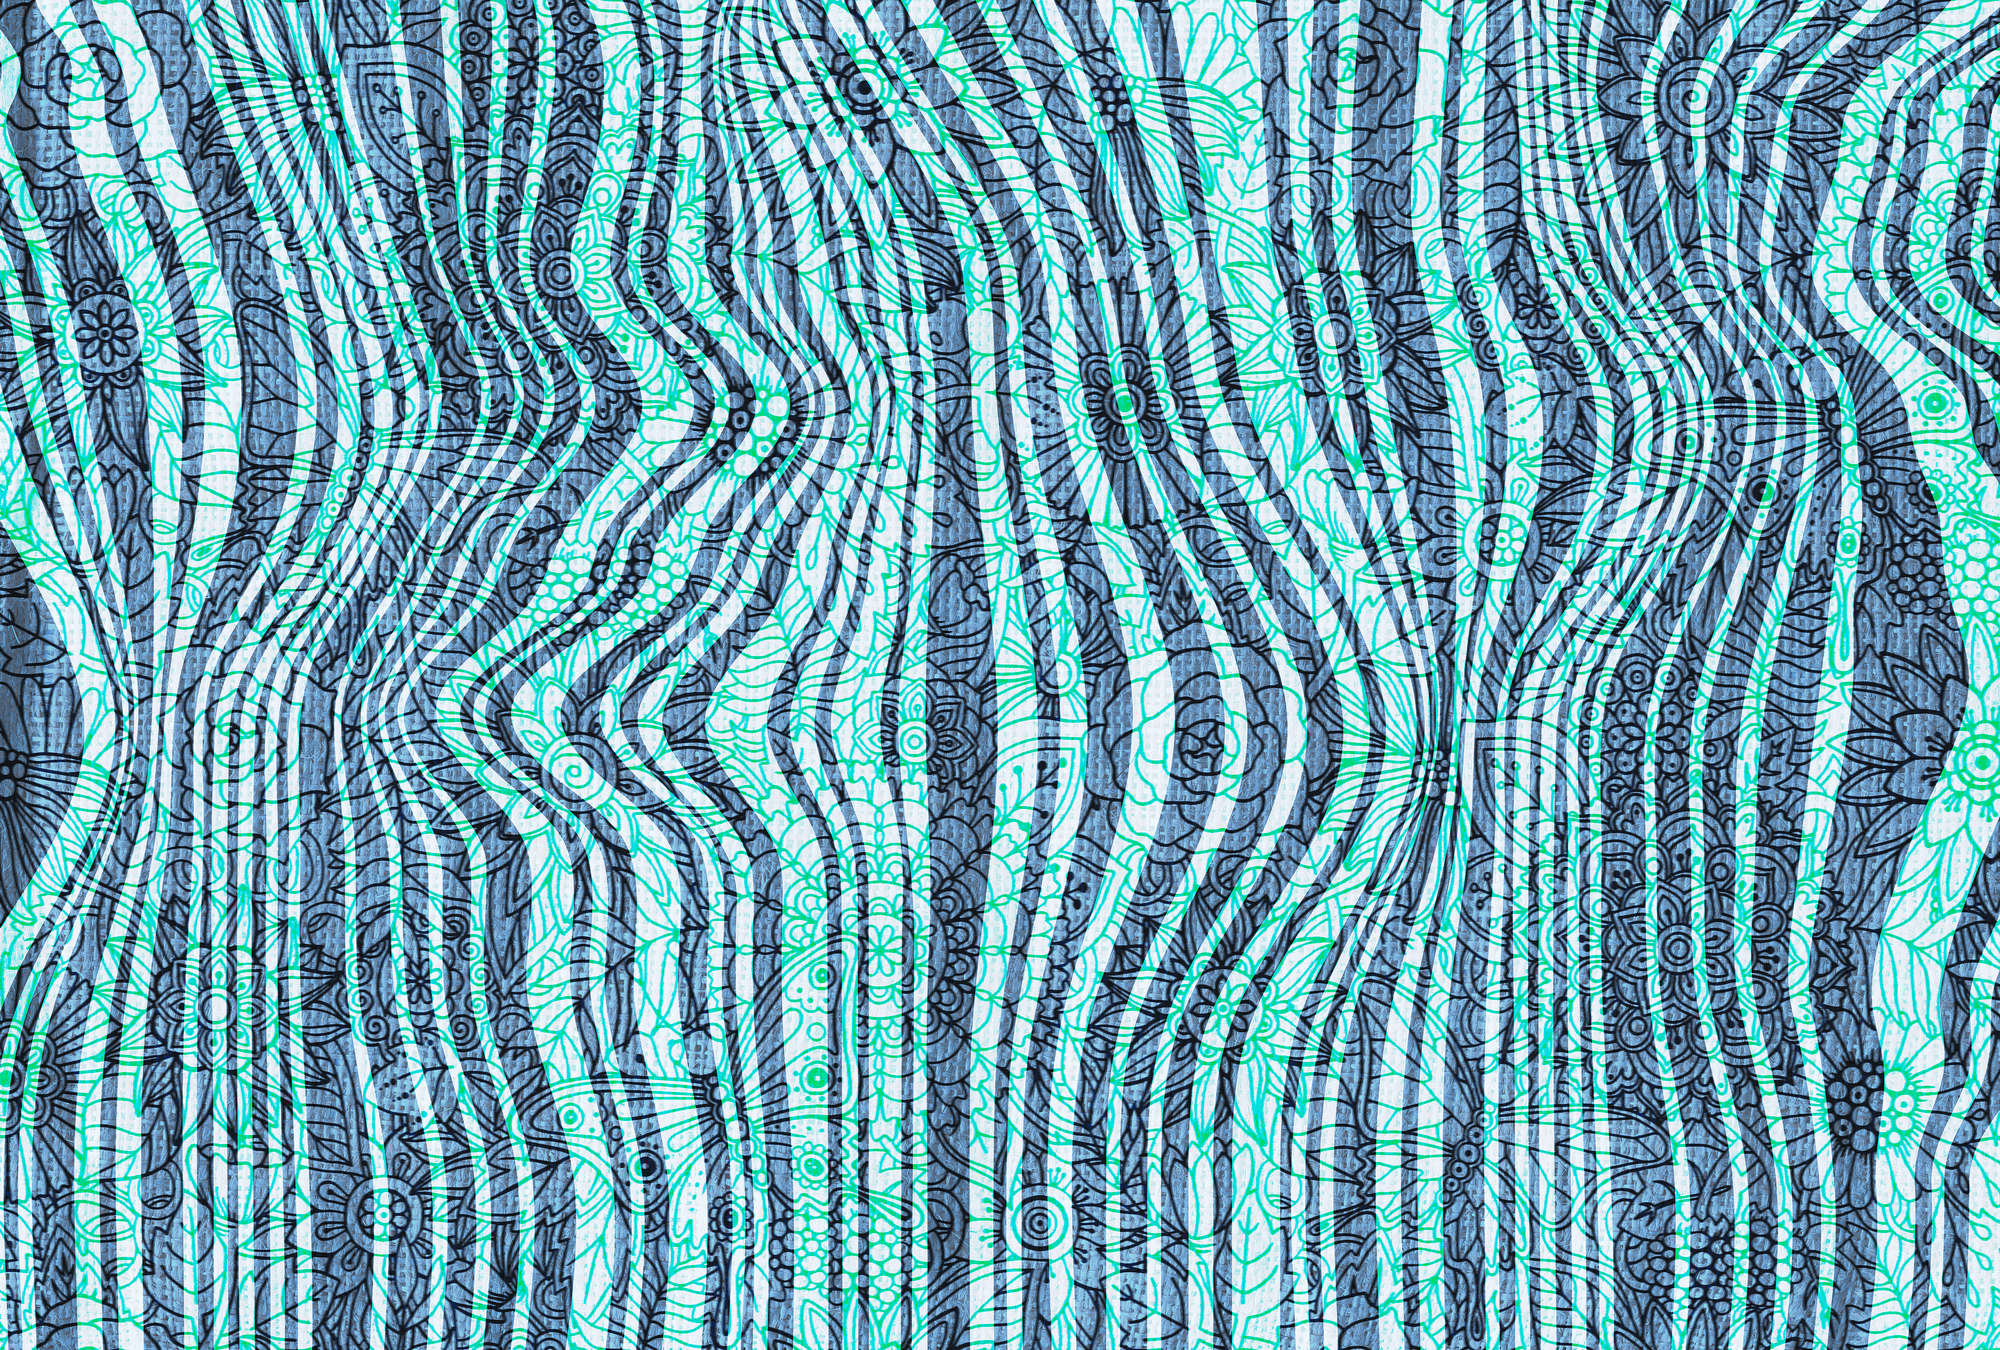             Mural de pared de diseño de garabatos, patrón de línea abstracta - azul, verde, negro
        